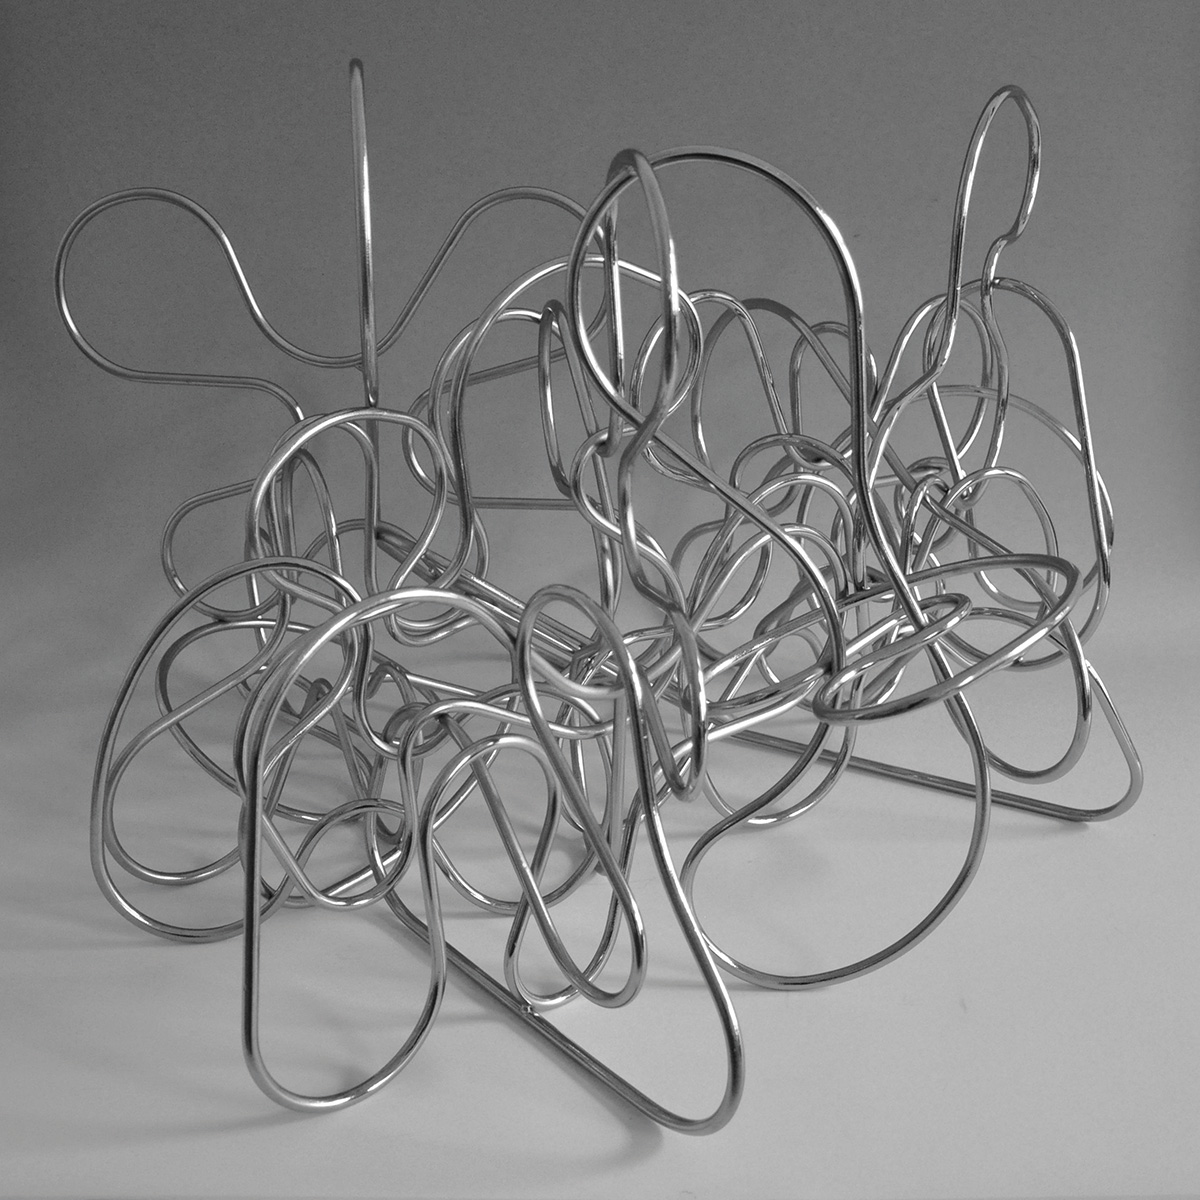 Loop 3, 2016je ca. 50 x 50 x 75 cm3 Einzelobjekte, Rundstahl Ø 8 mm, vernickelt